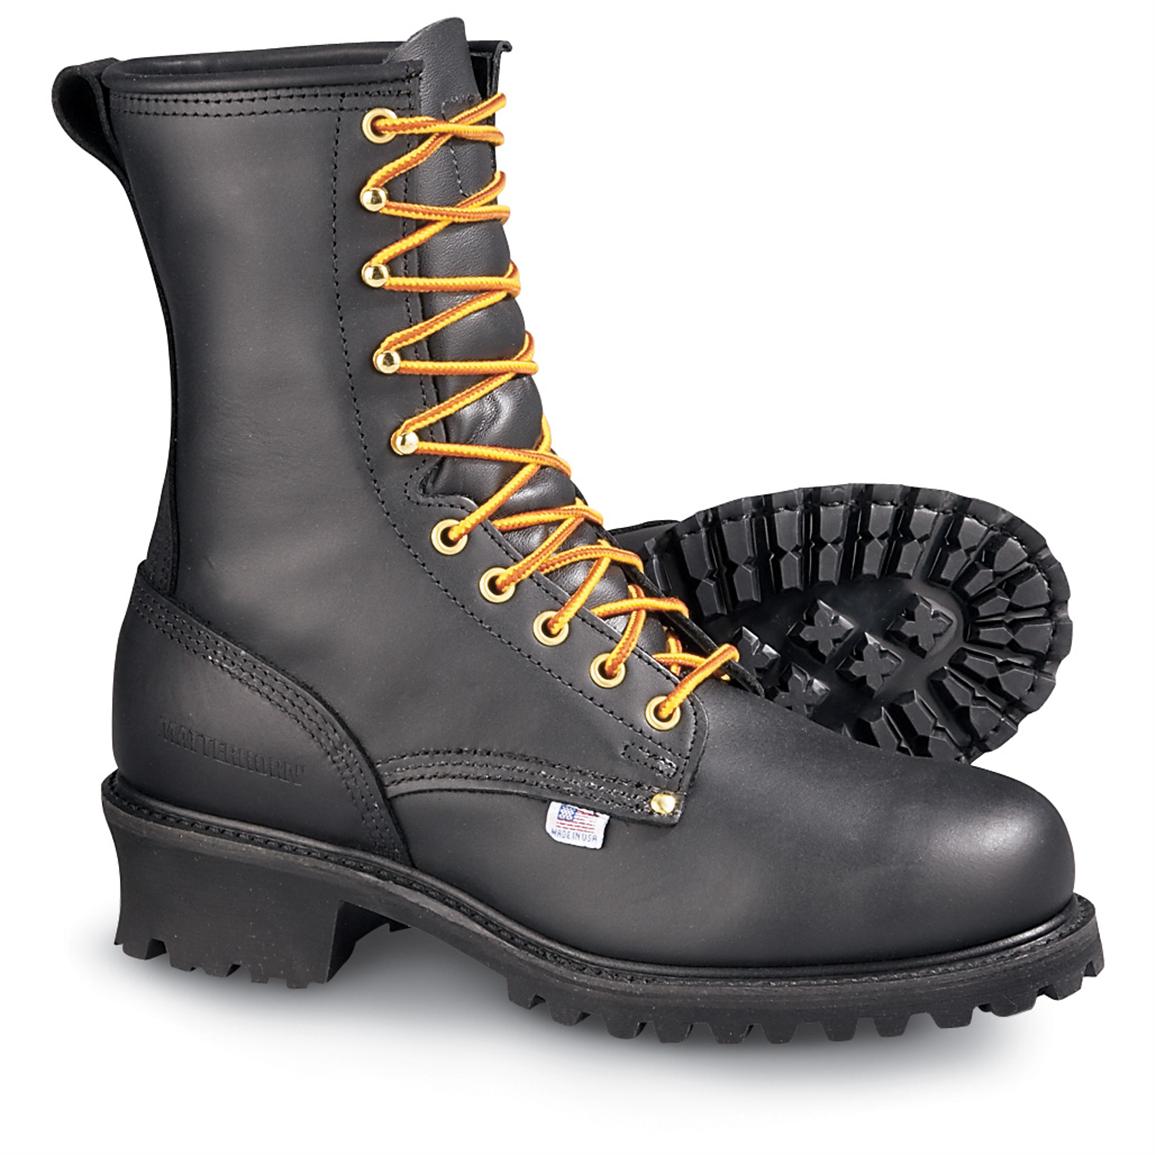 matterhorn logger boots